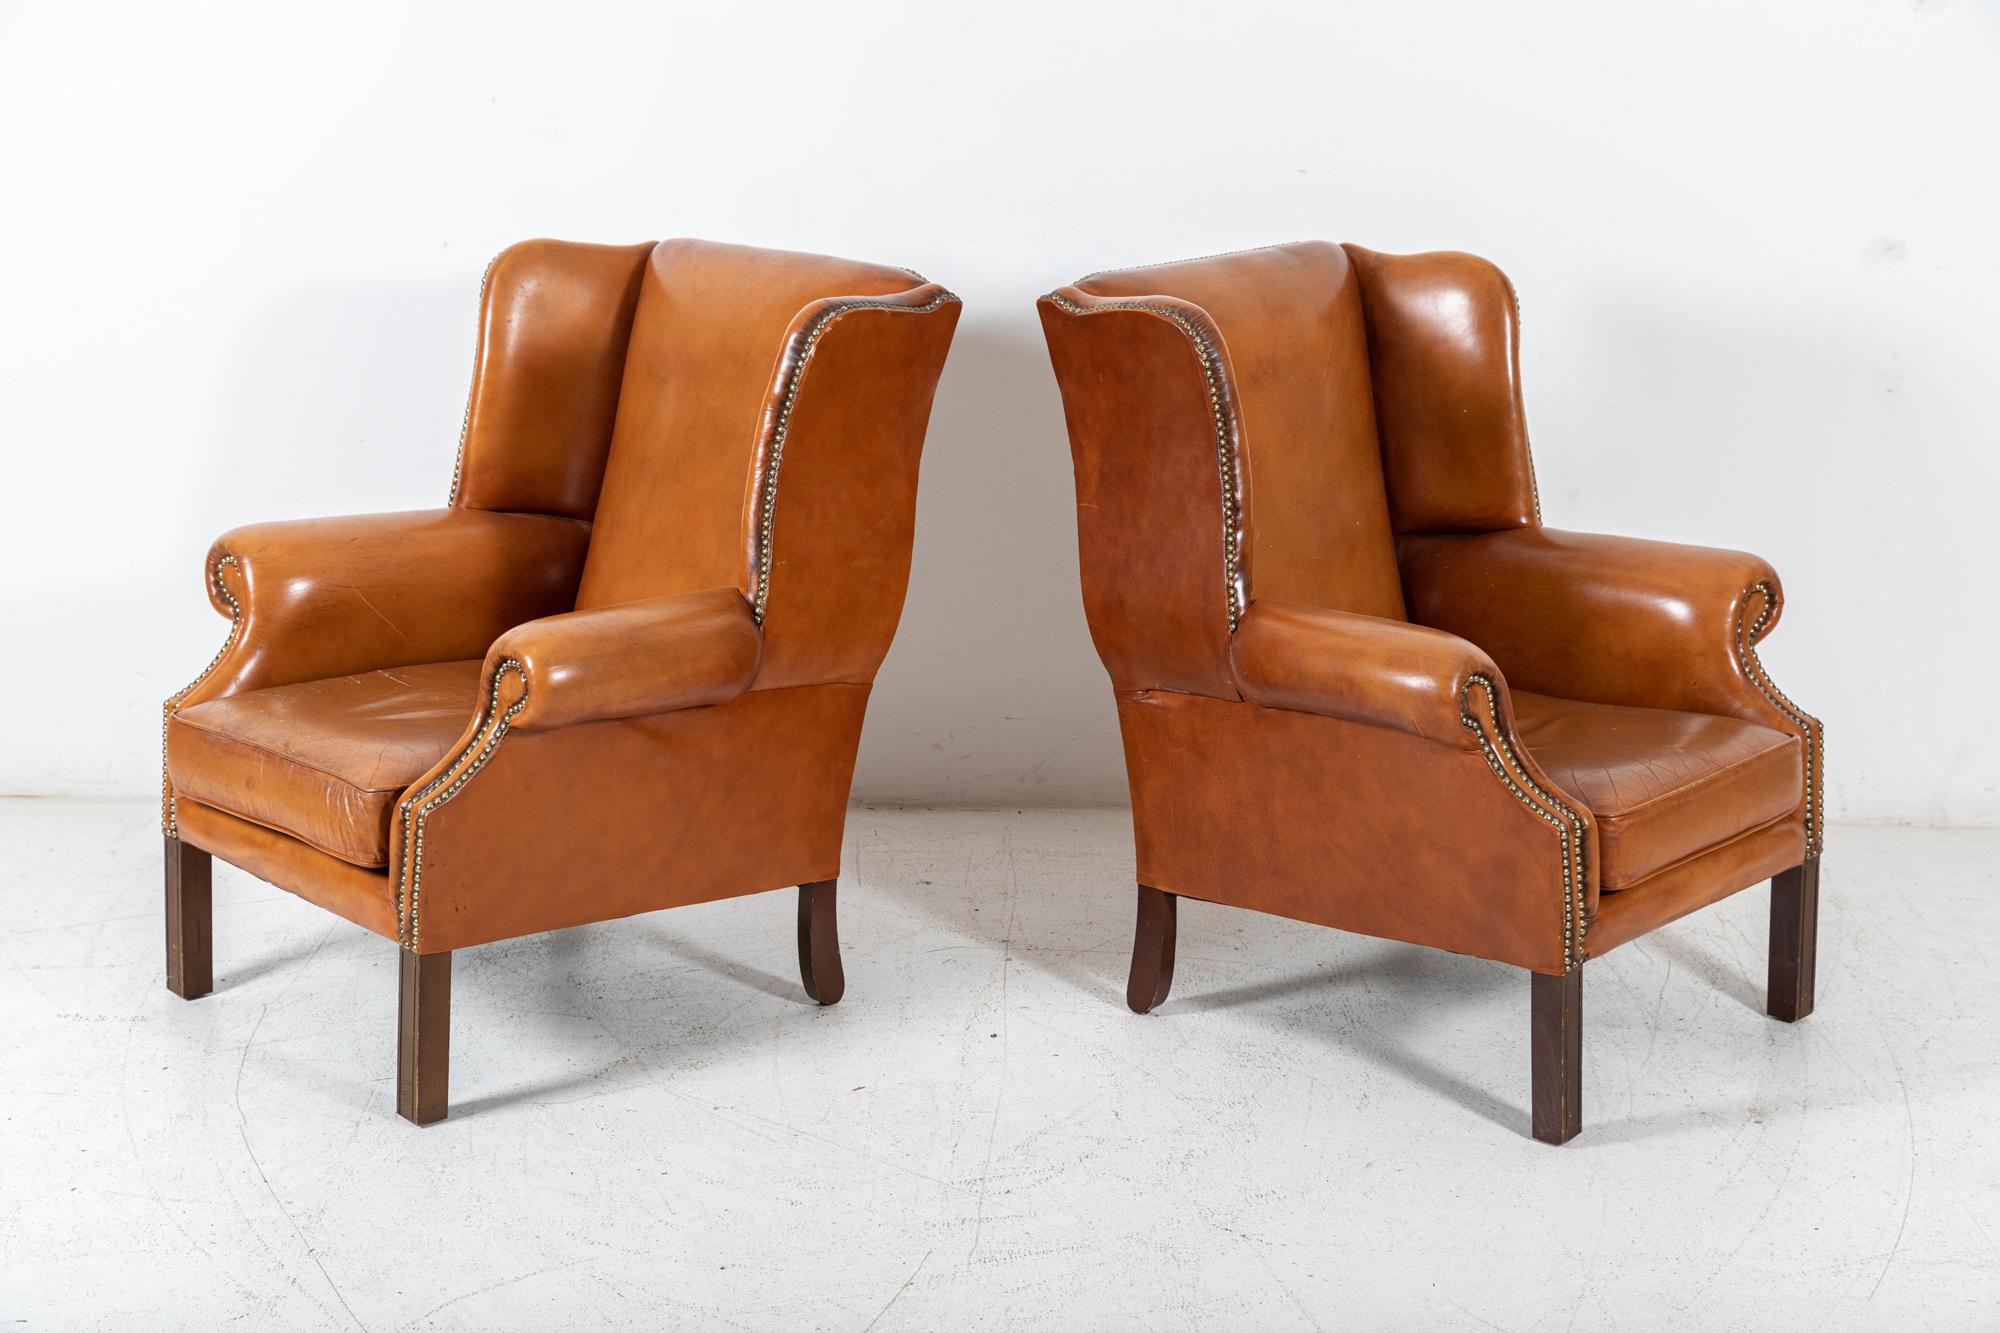 Um 1950

Paar georgianische Sessel aus braunem Leder

Messing besetzt mit ausgezeichneter Farbe und Form

Der Preis gilt für das Paar



Maße: B76 x T64 x H97 cm.